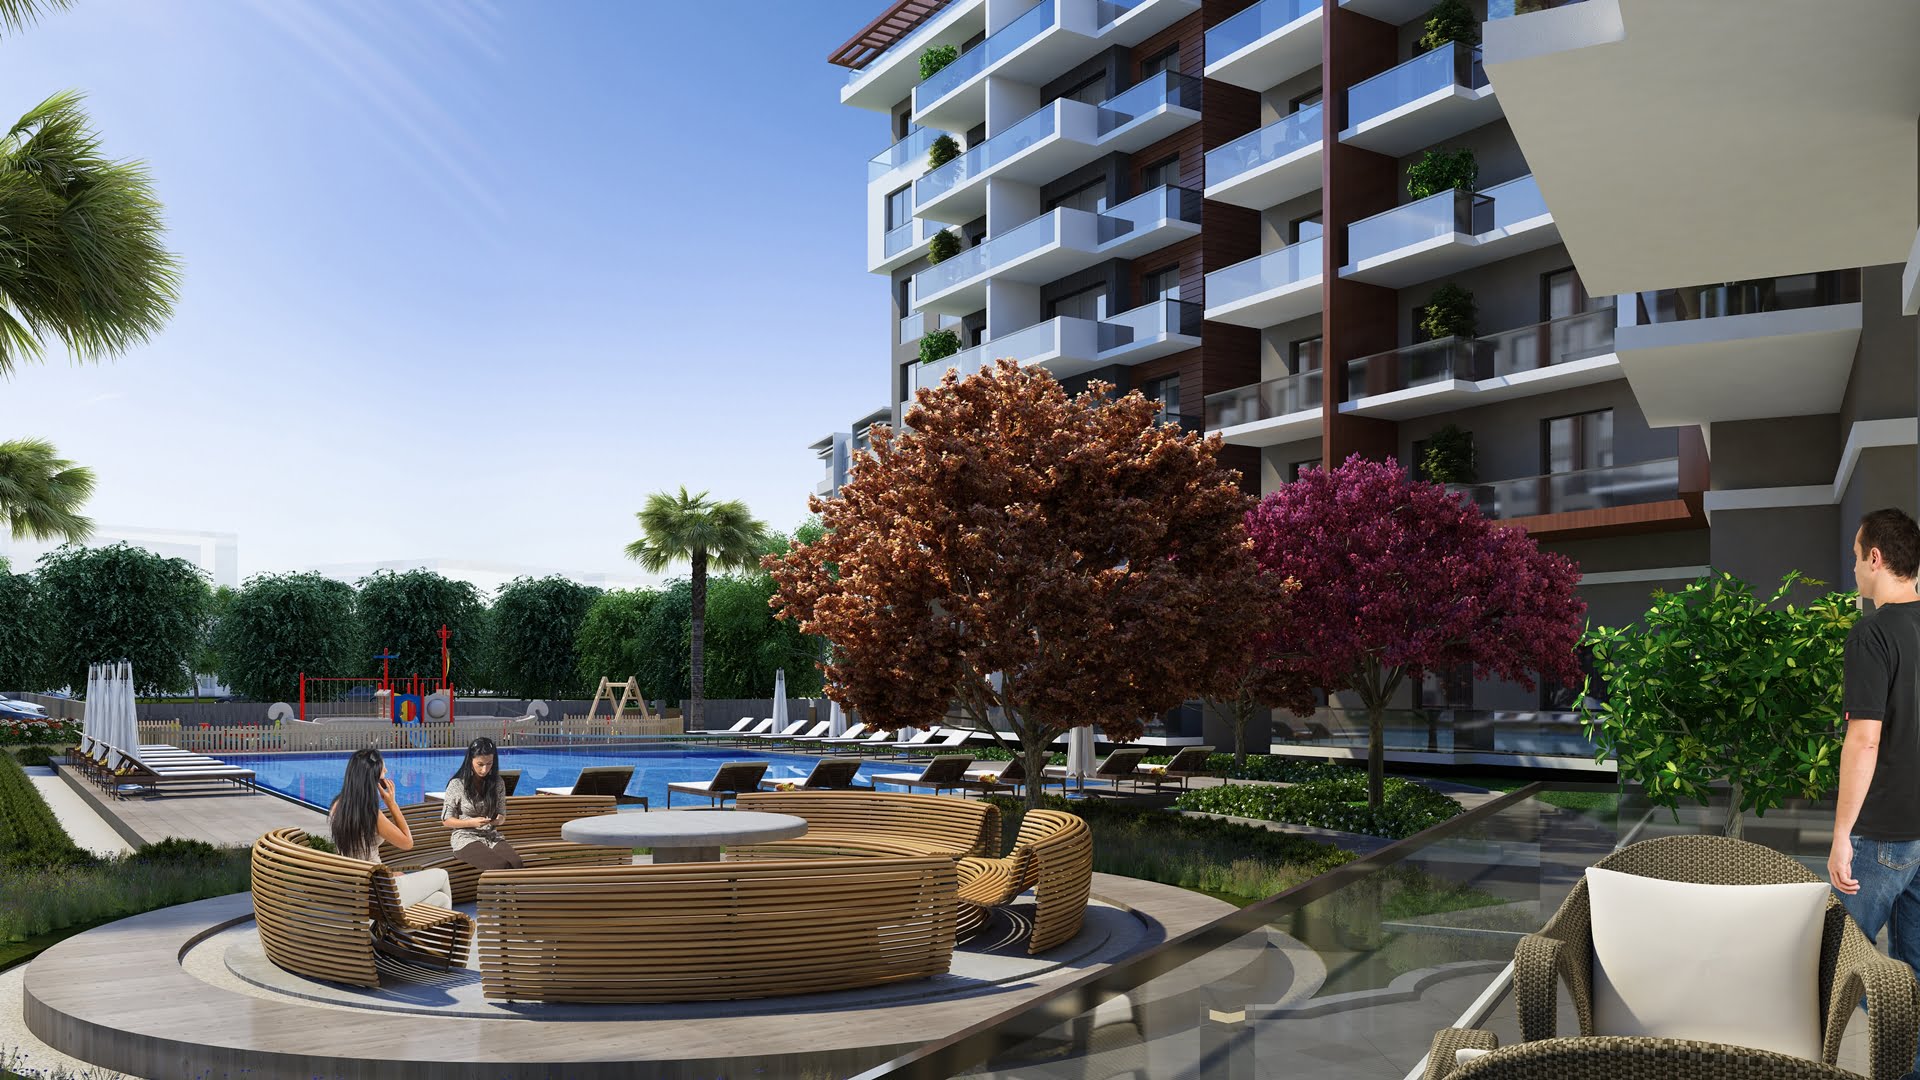 New luxury Izmir apartments for sale